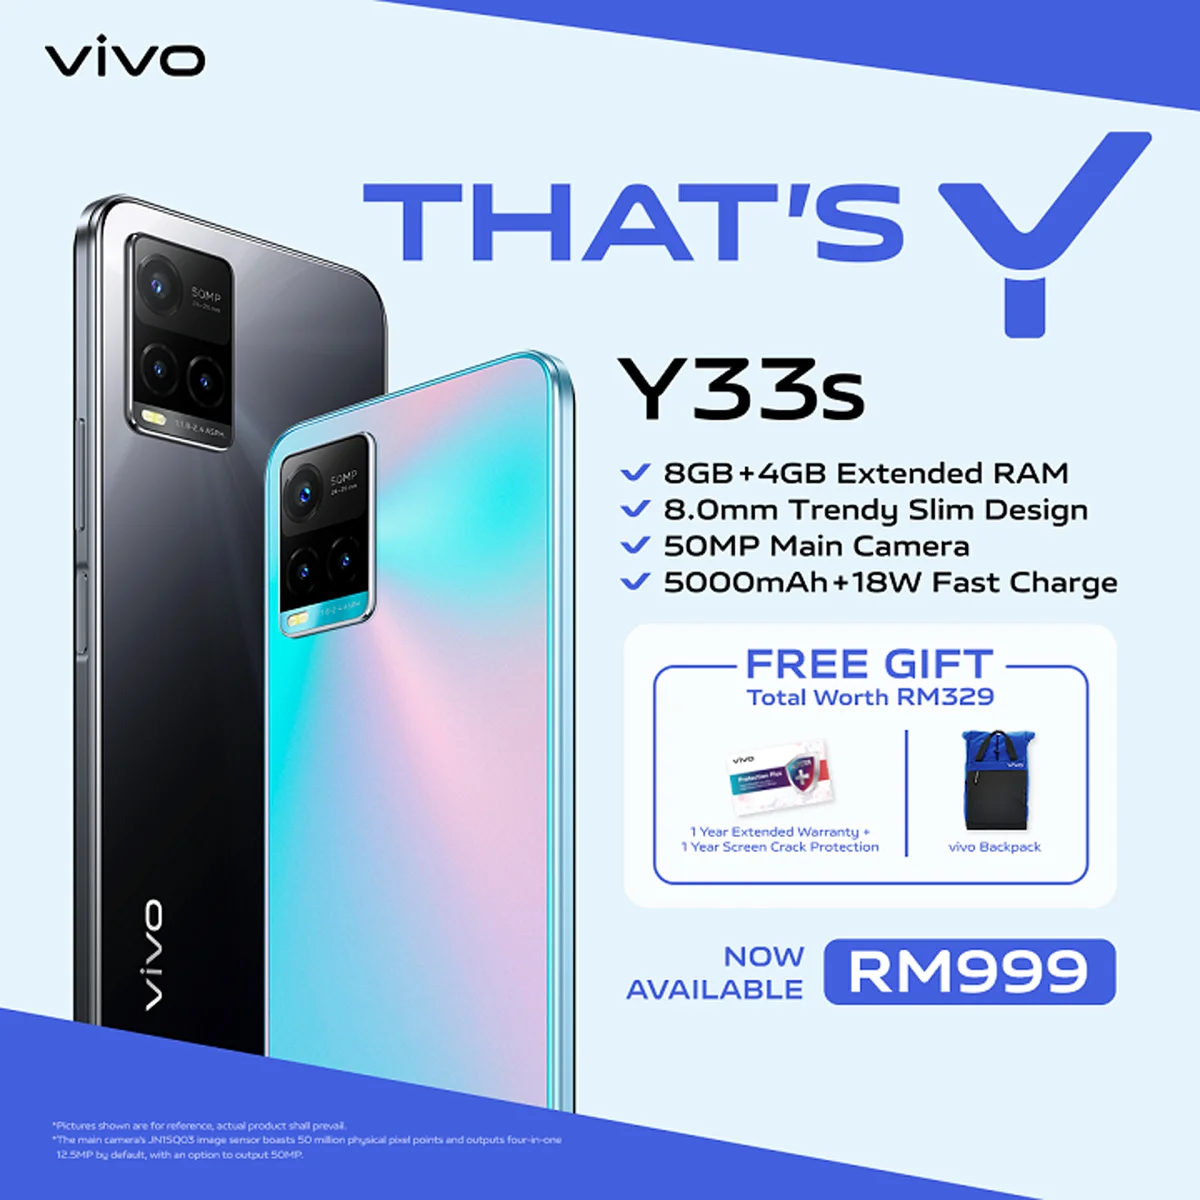 Vivo Malaysia Y33s smartphone pre-order